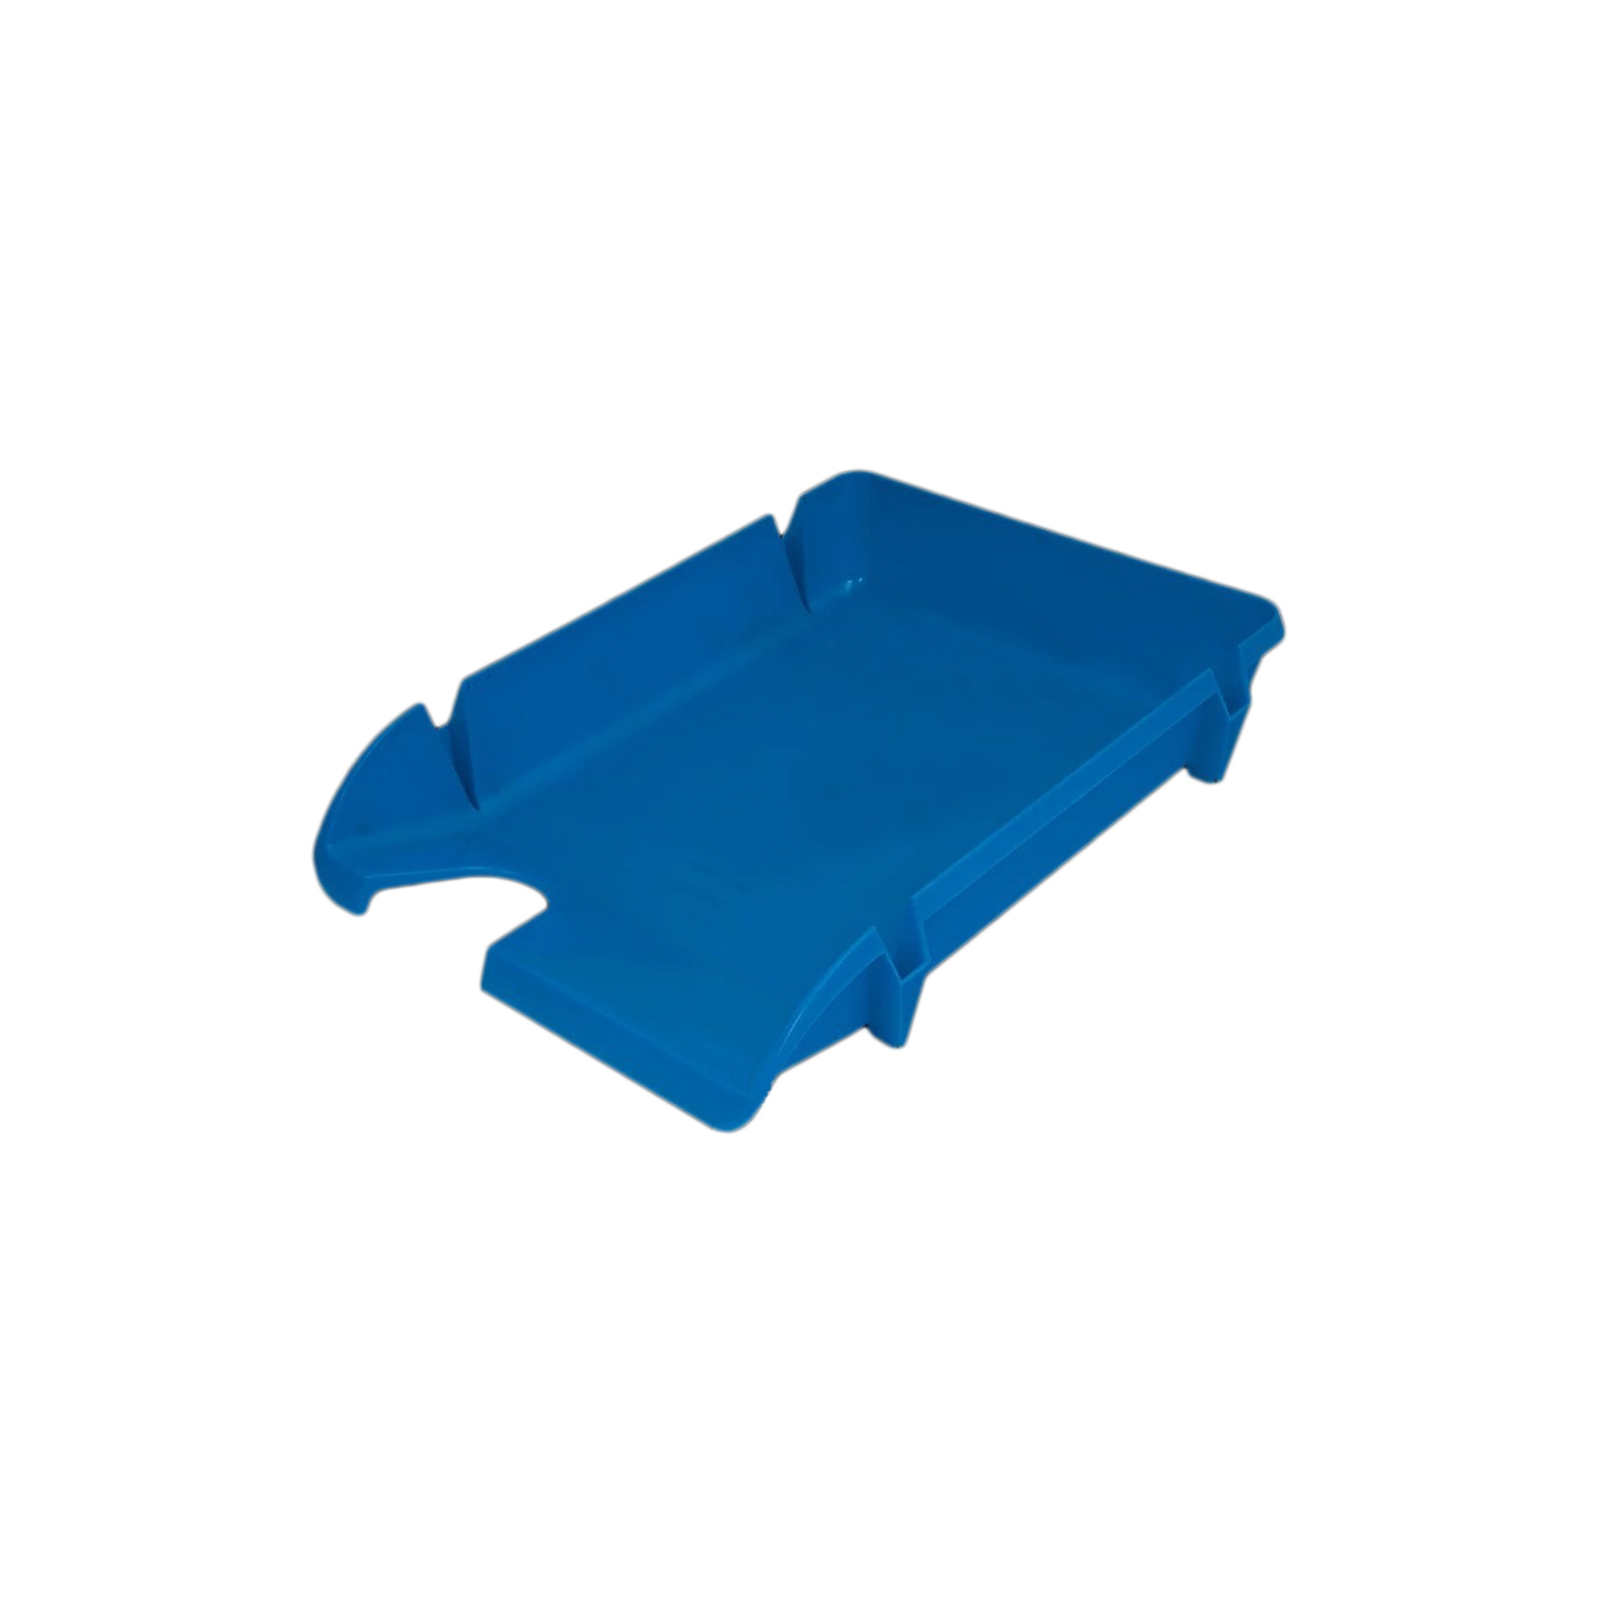 Лоток для бумаг Economix горизонтальный Компакт пластик, голубой непрозрачный (E80600)